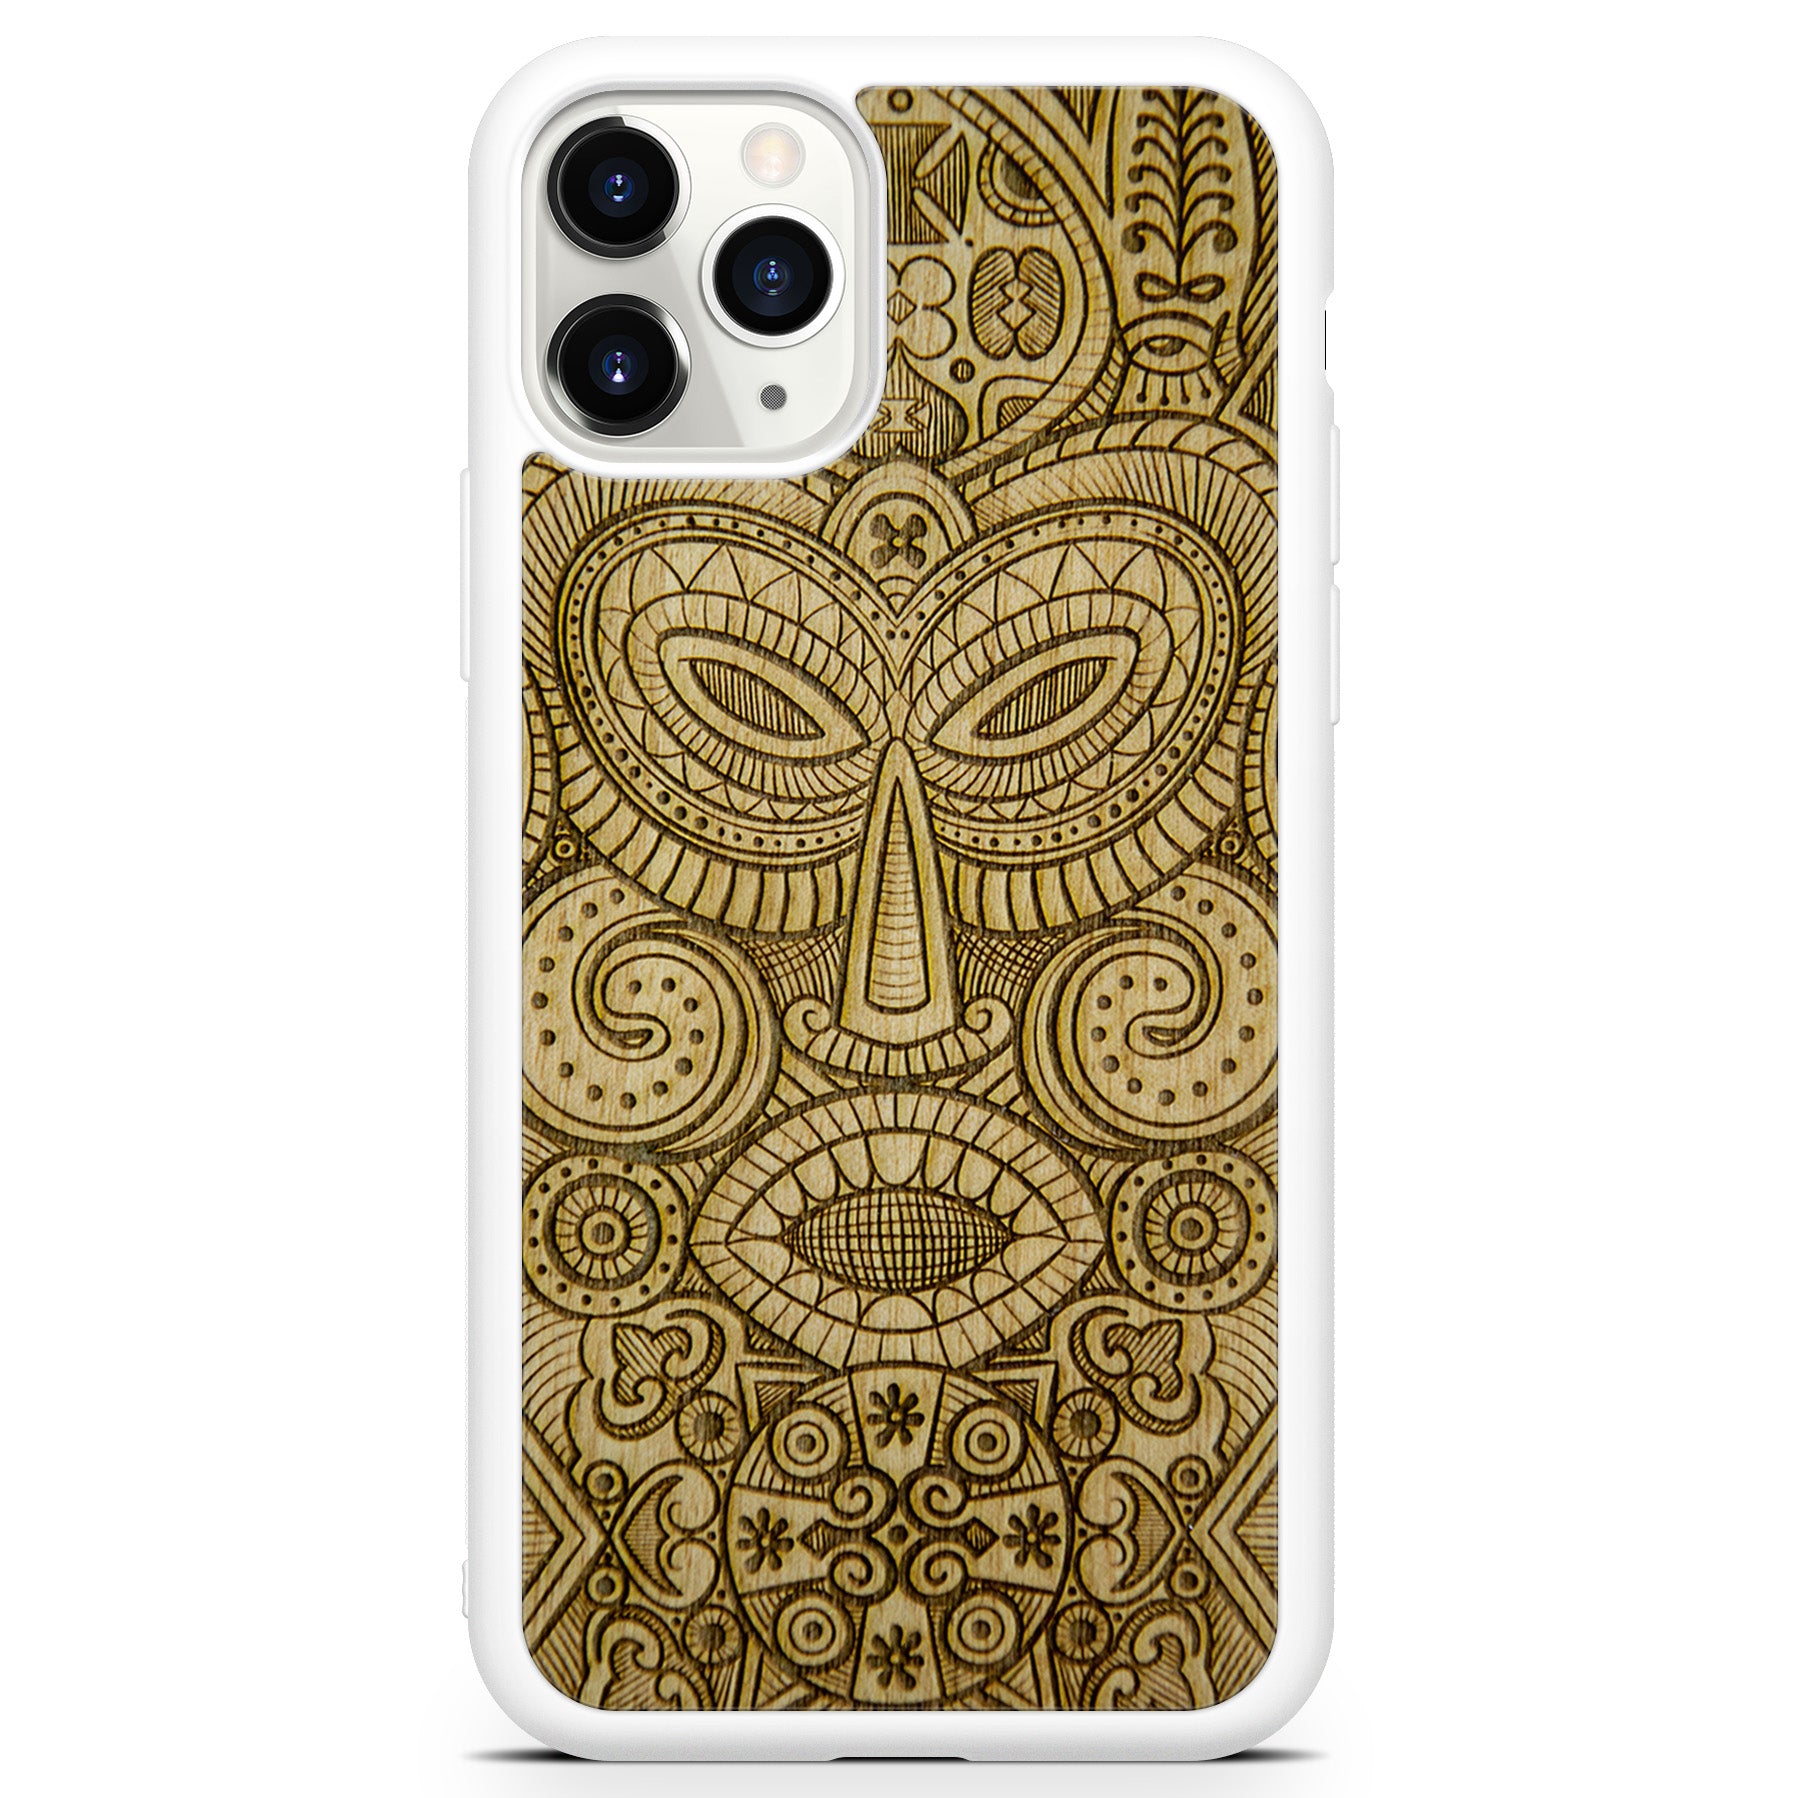 Custodia per telefono in legno bianco con maschera tribale per iPhone 11 Pro Max